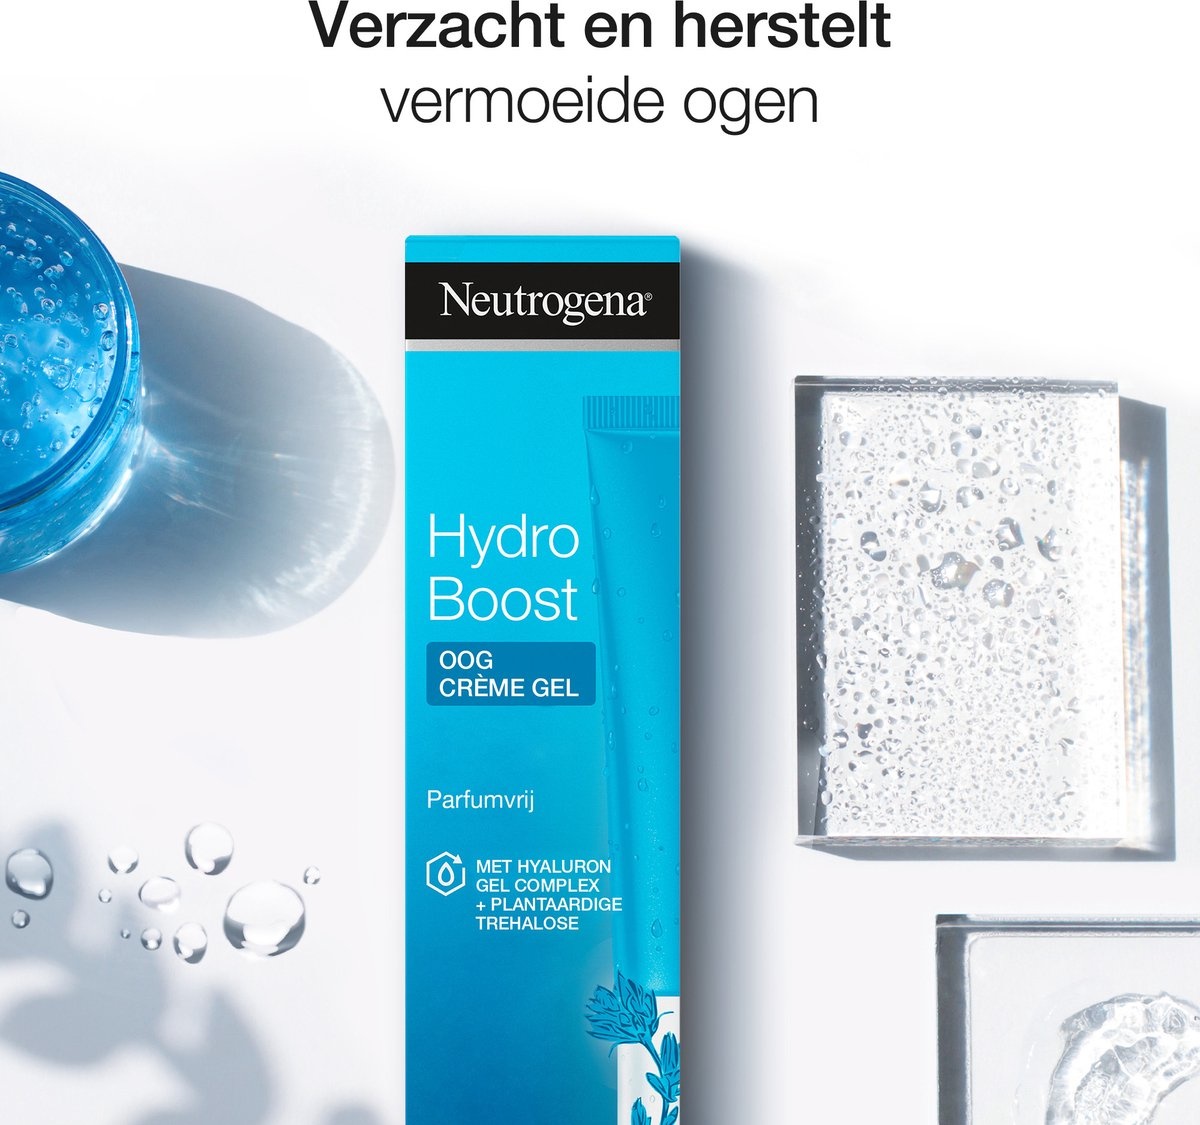 Neutrogena Hydro Boost Eye Cream - Packaging damaged